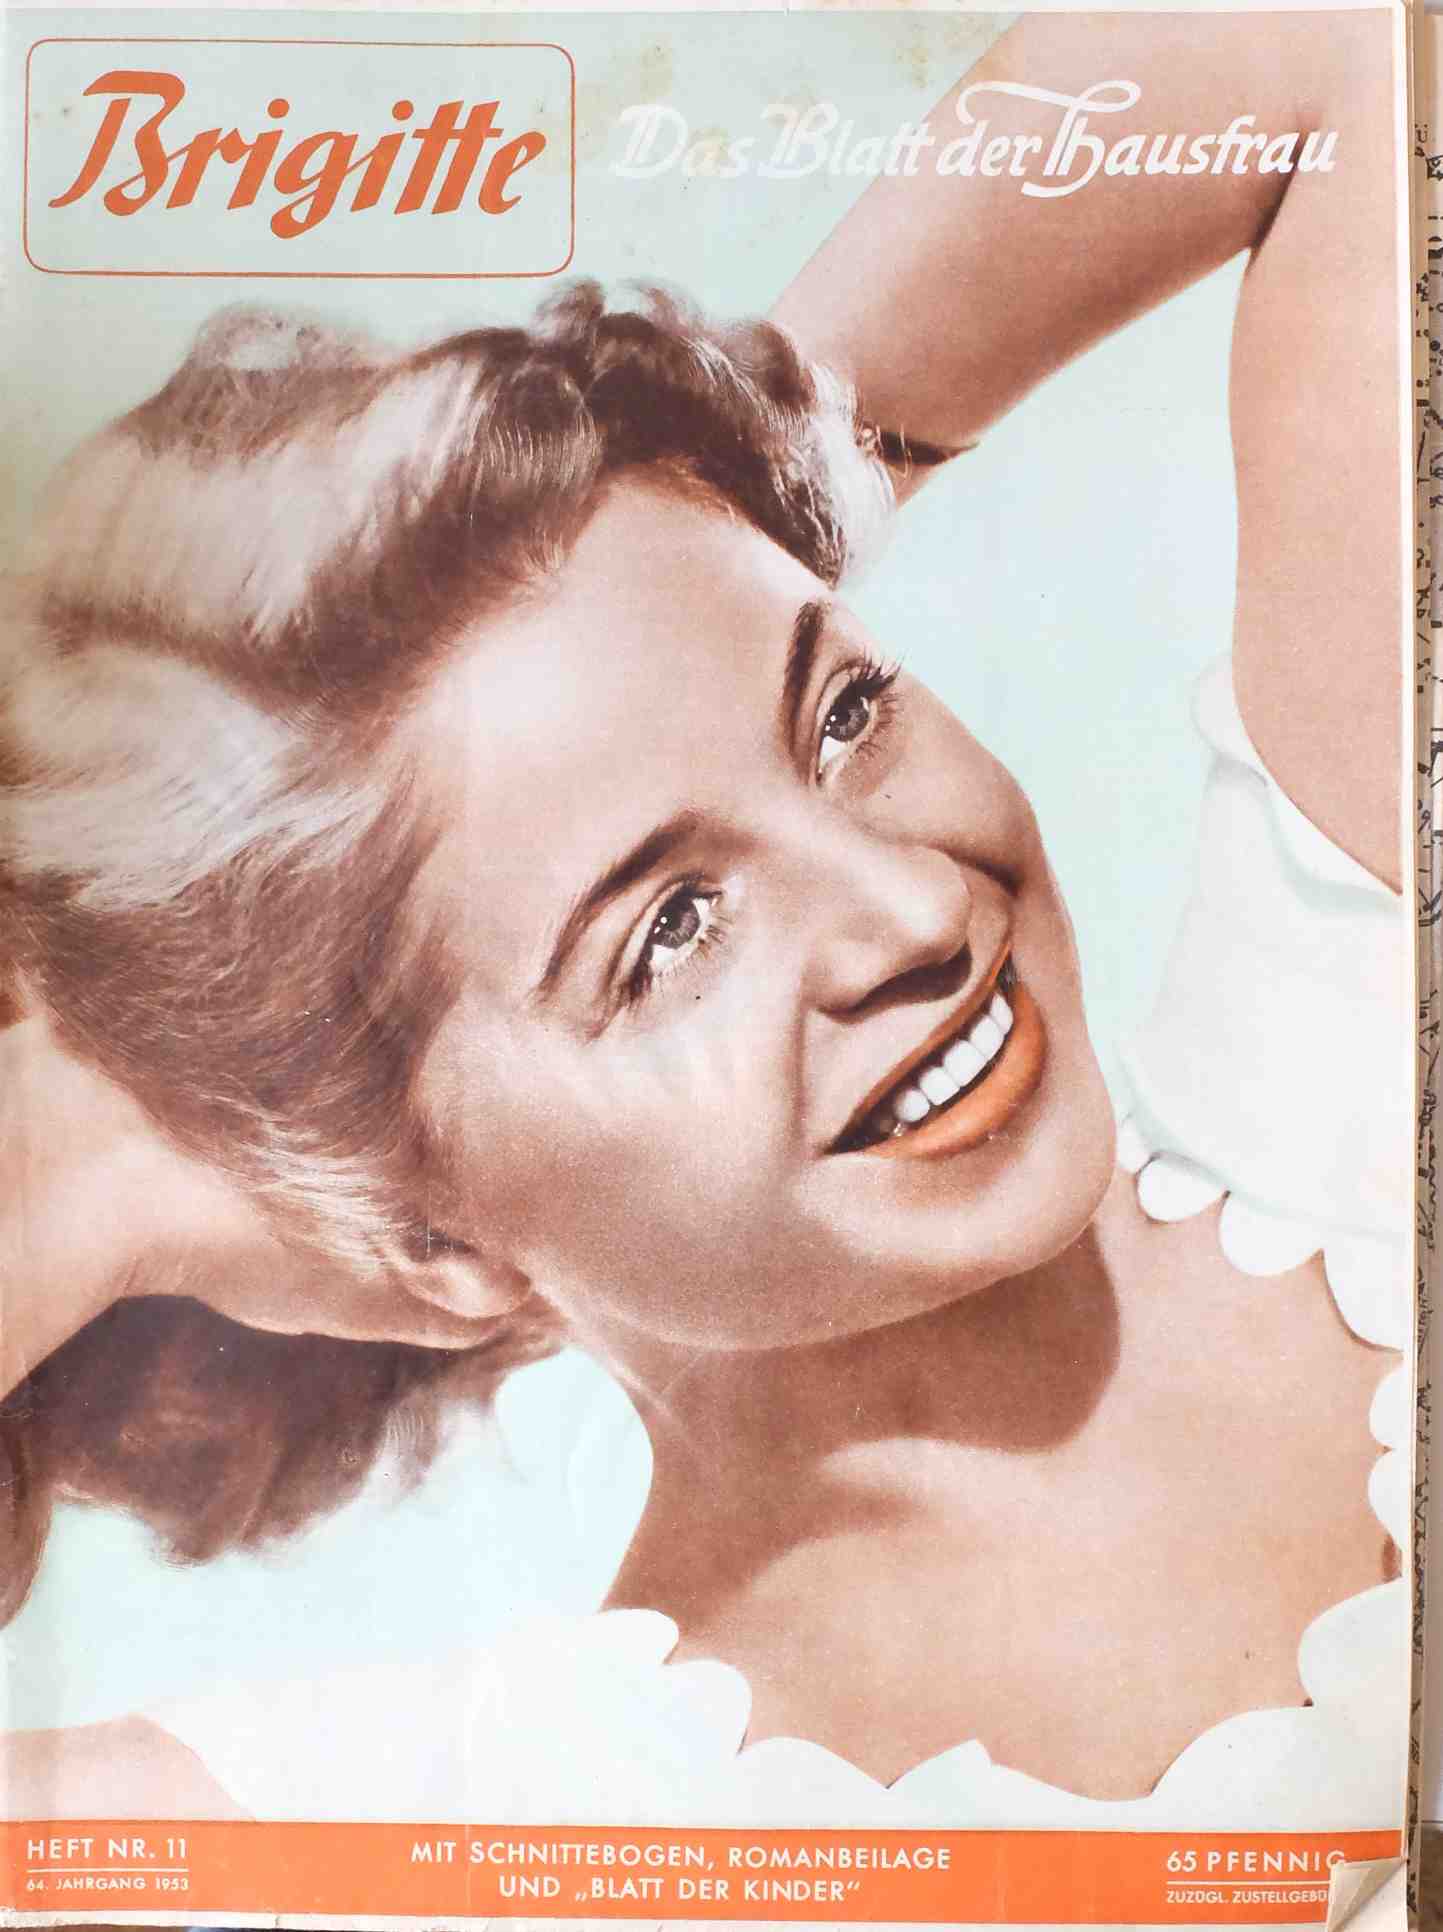 Brigitte Heft 11 - 64. Jahrgang 1953